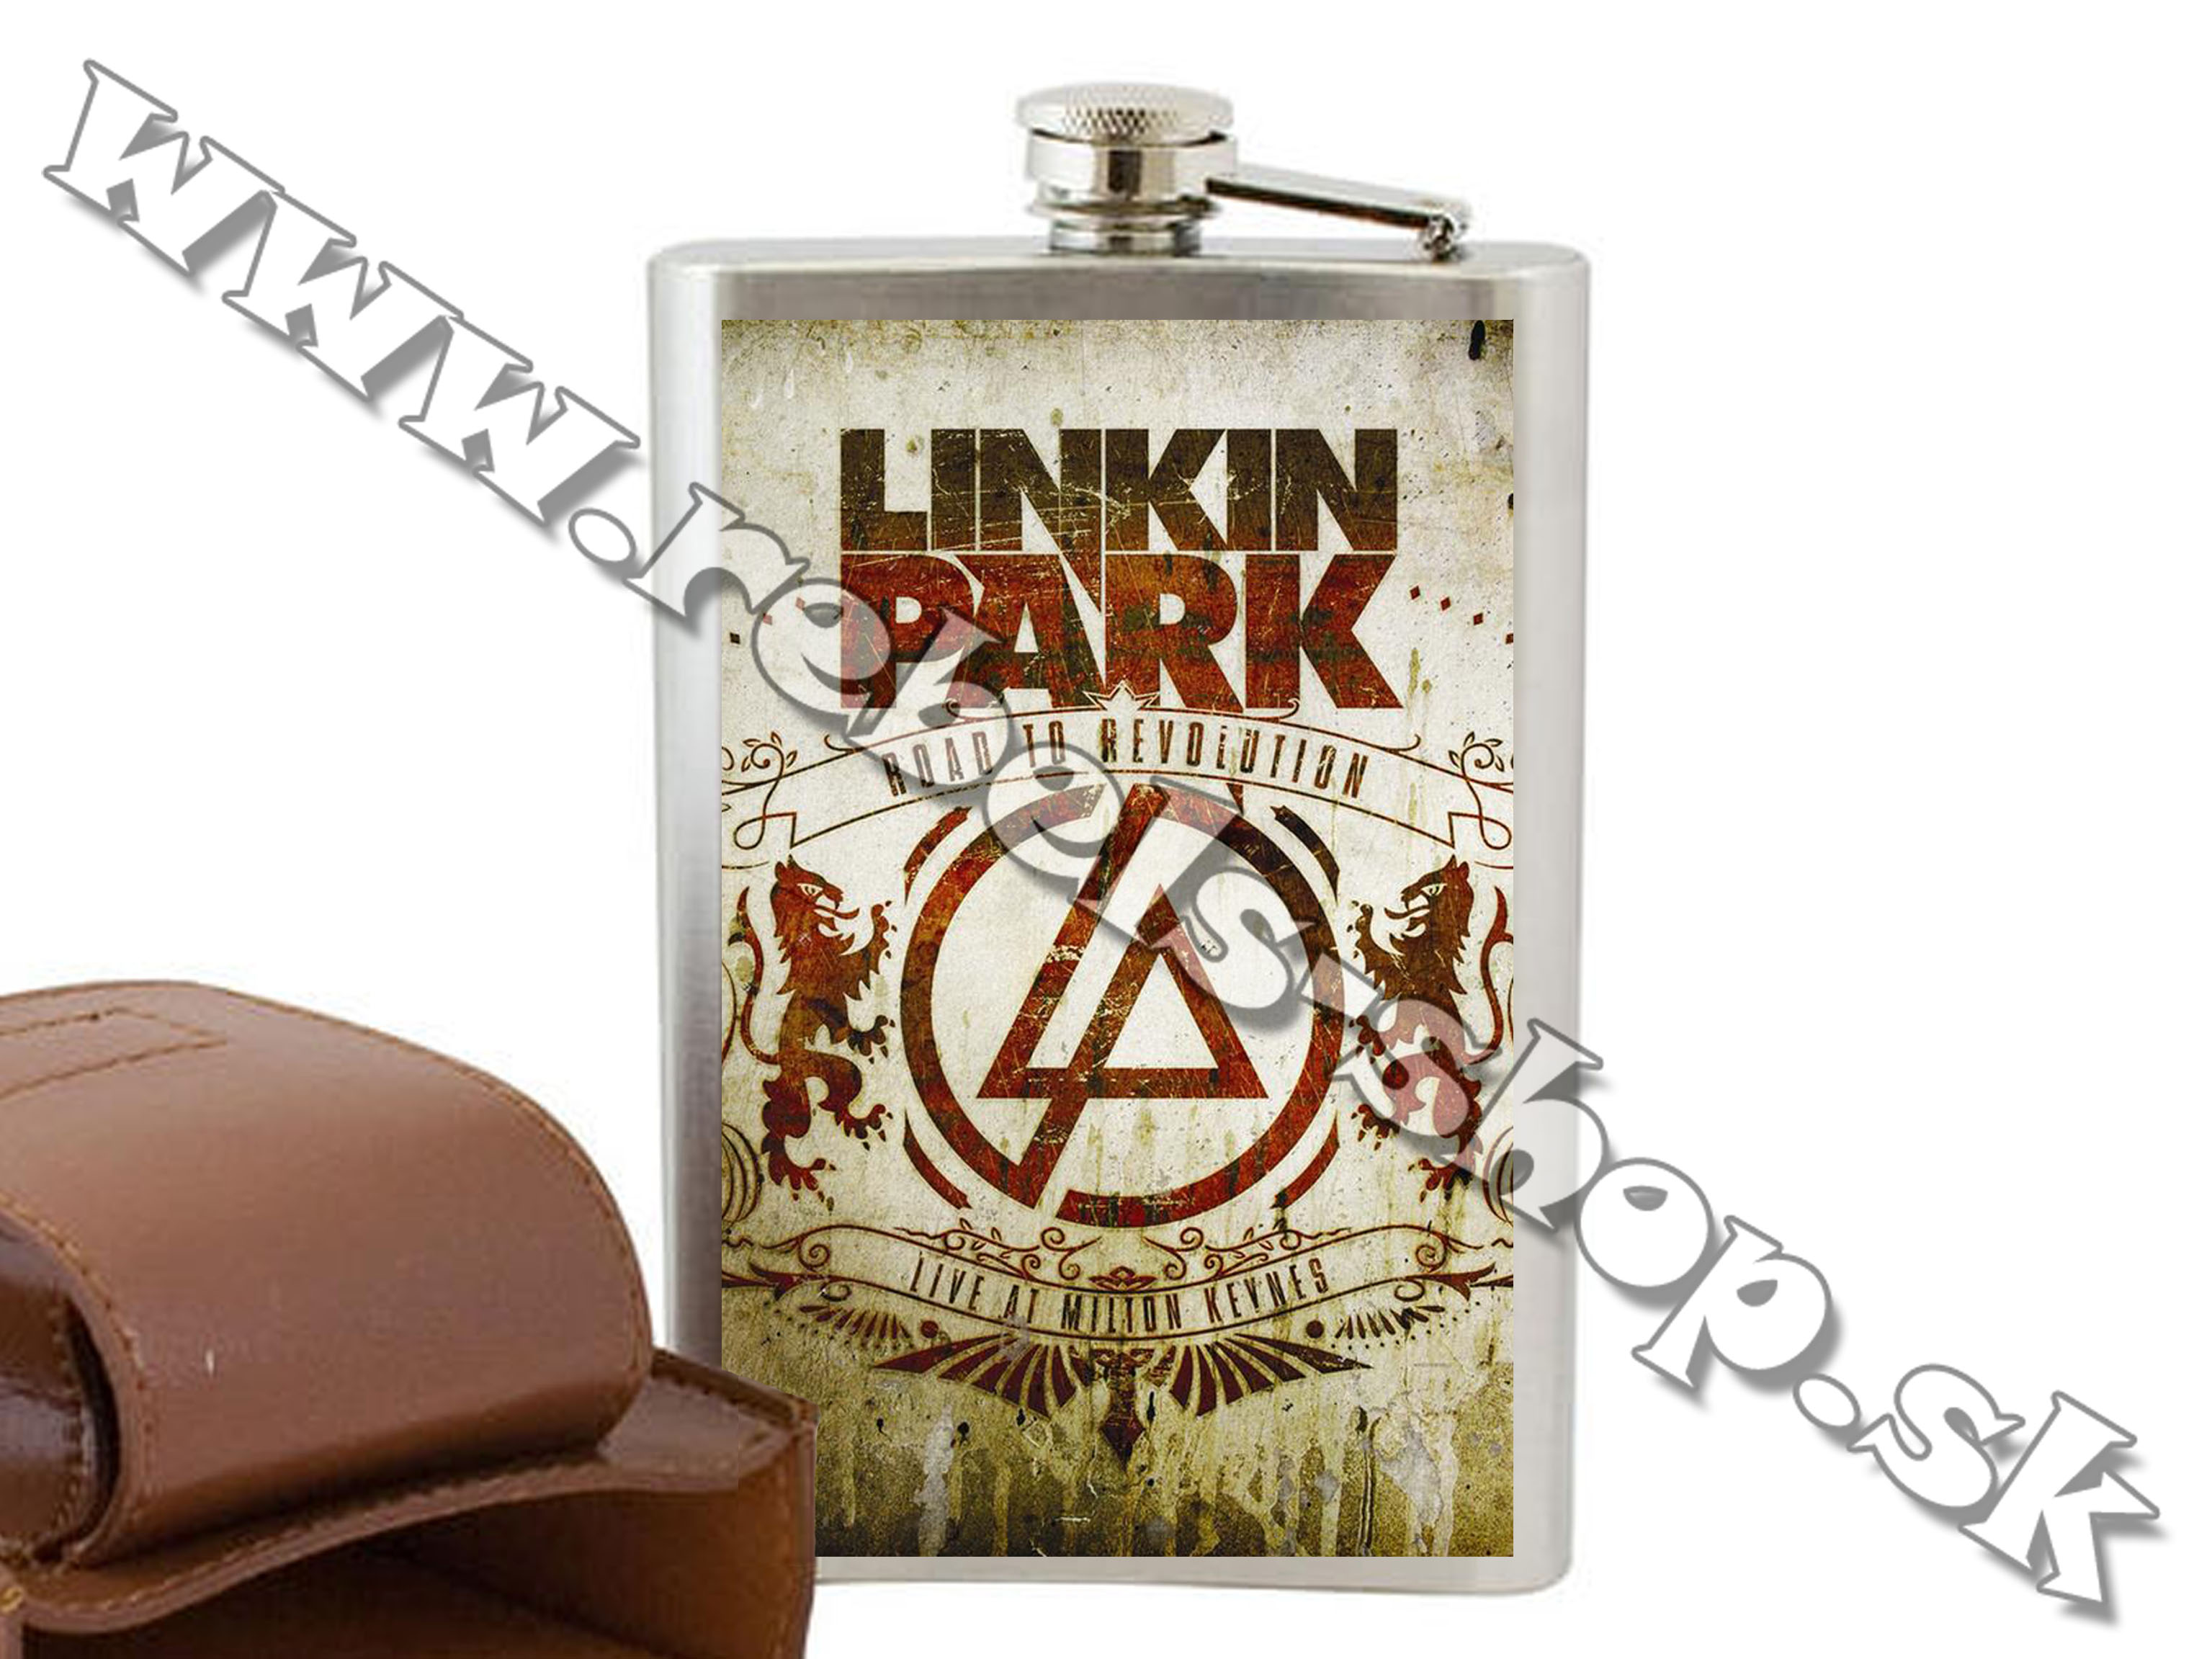 Ploskačka "Linkin Park"